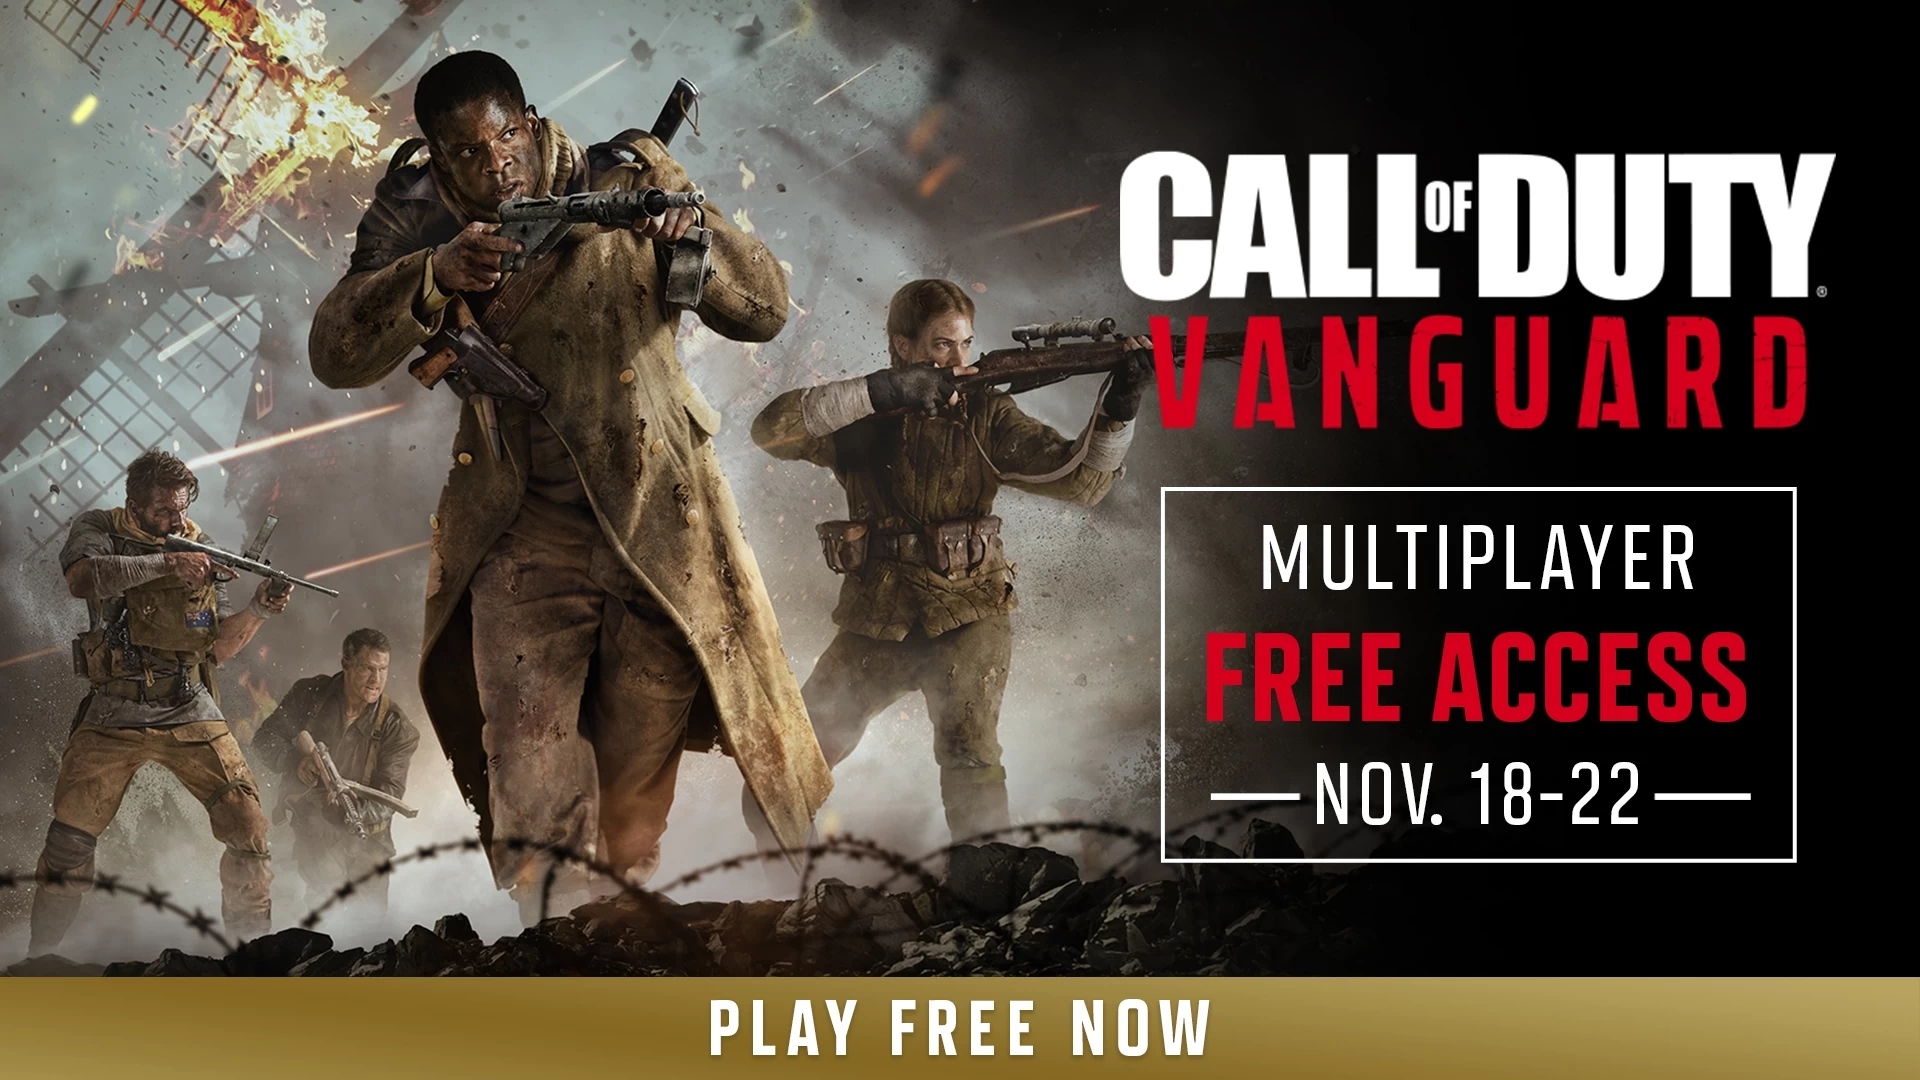 Każdy może zagrać w Call of Duty: Vanguard za darmo do 22 listopada